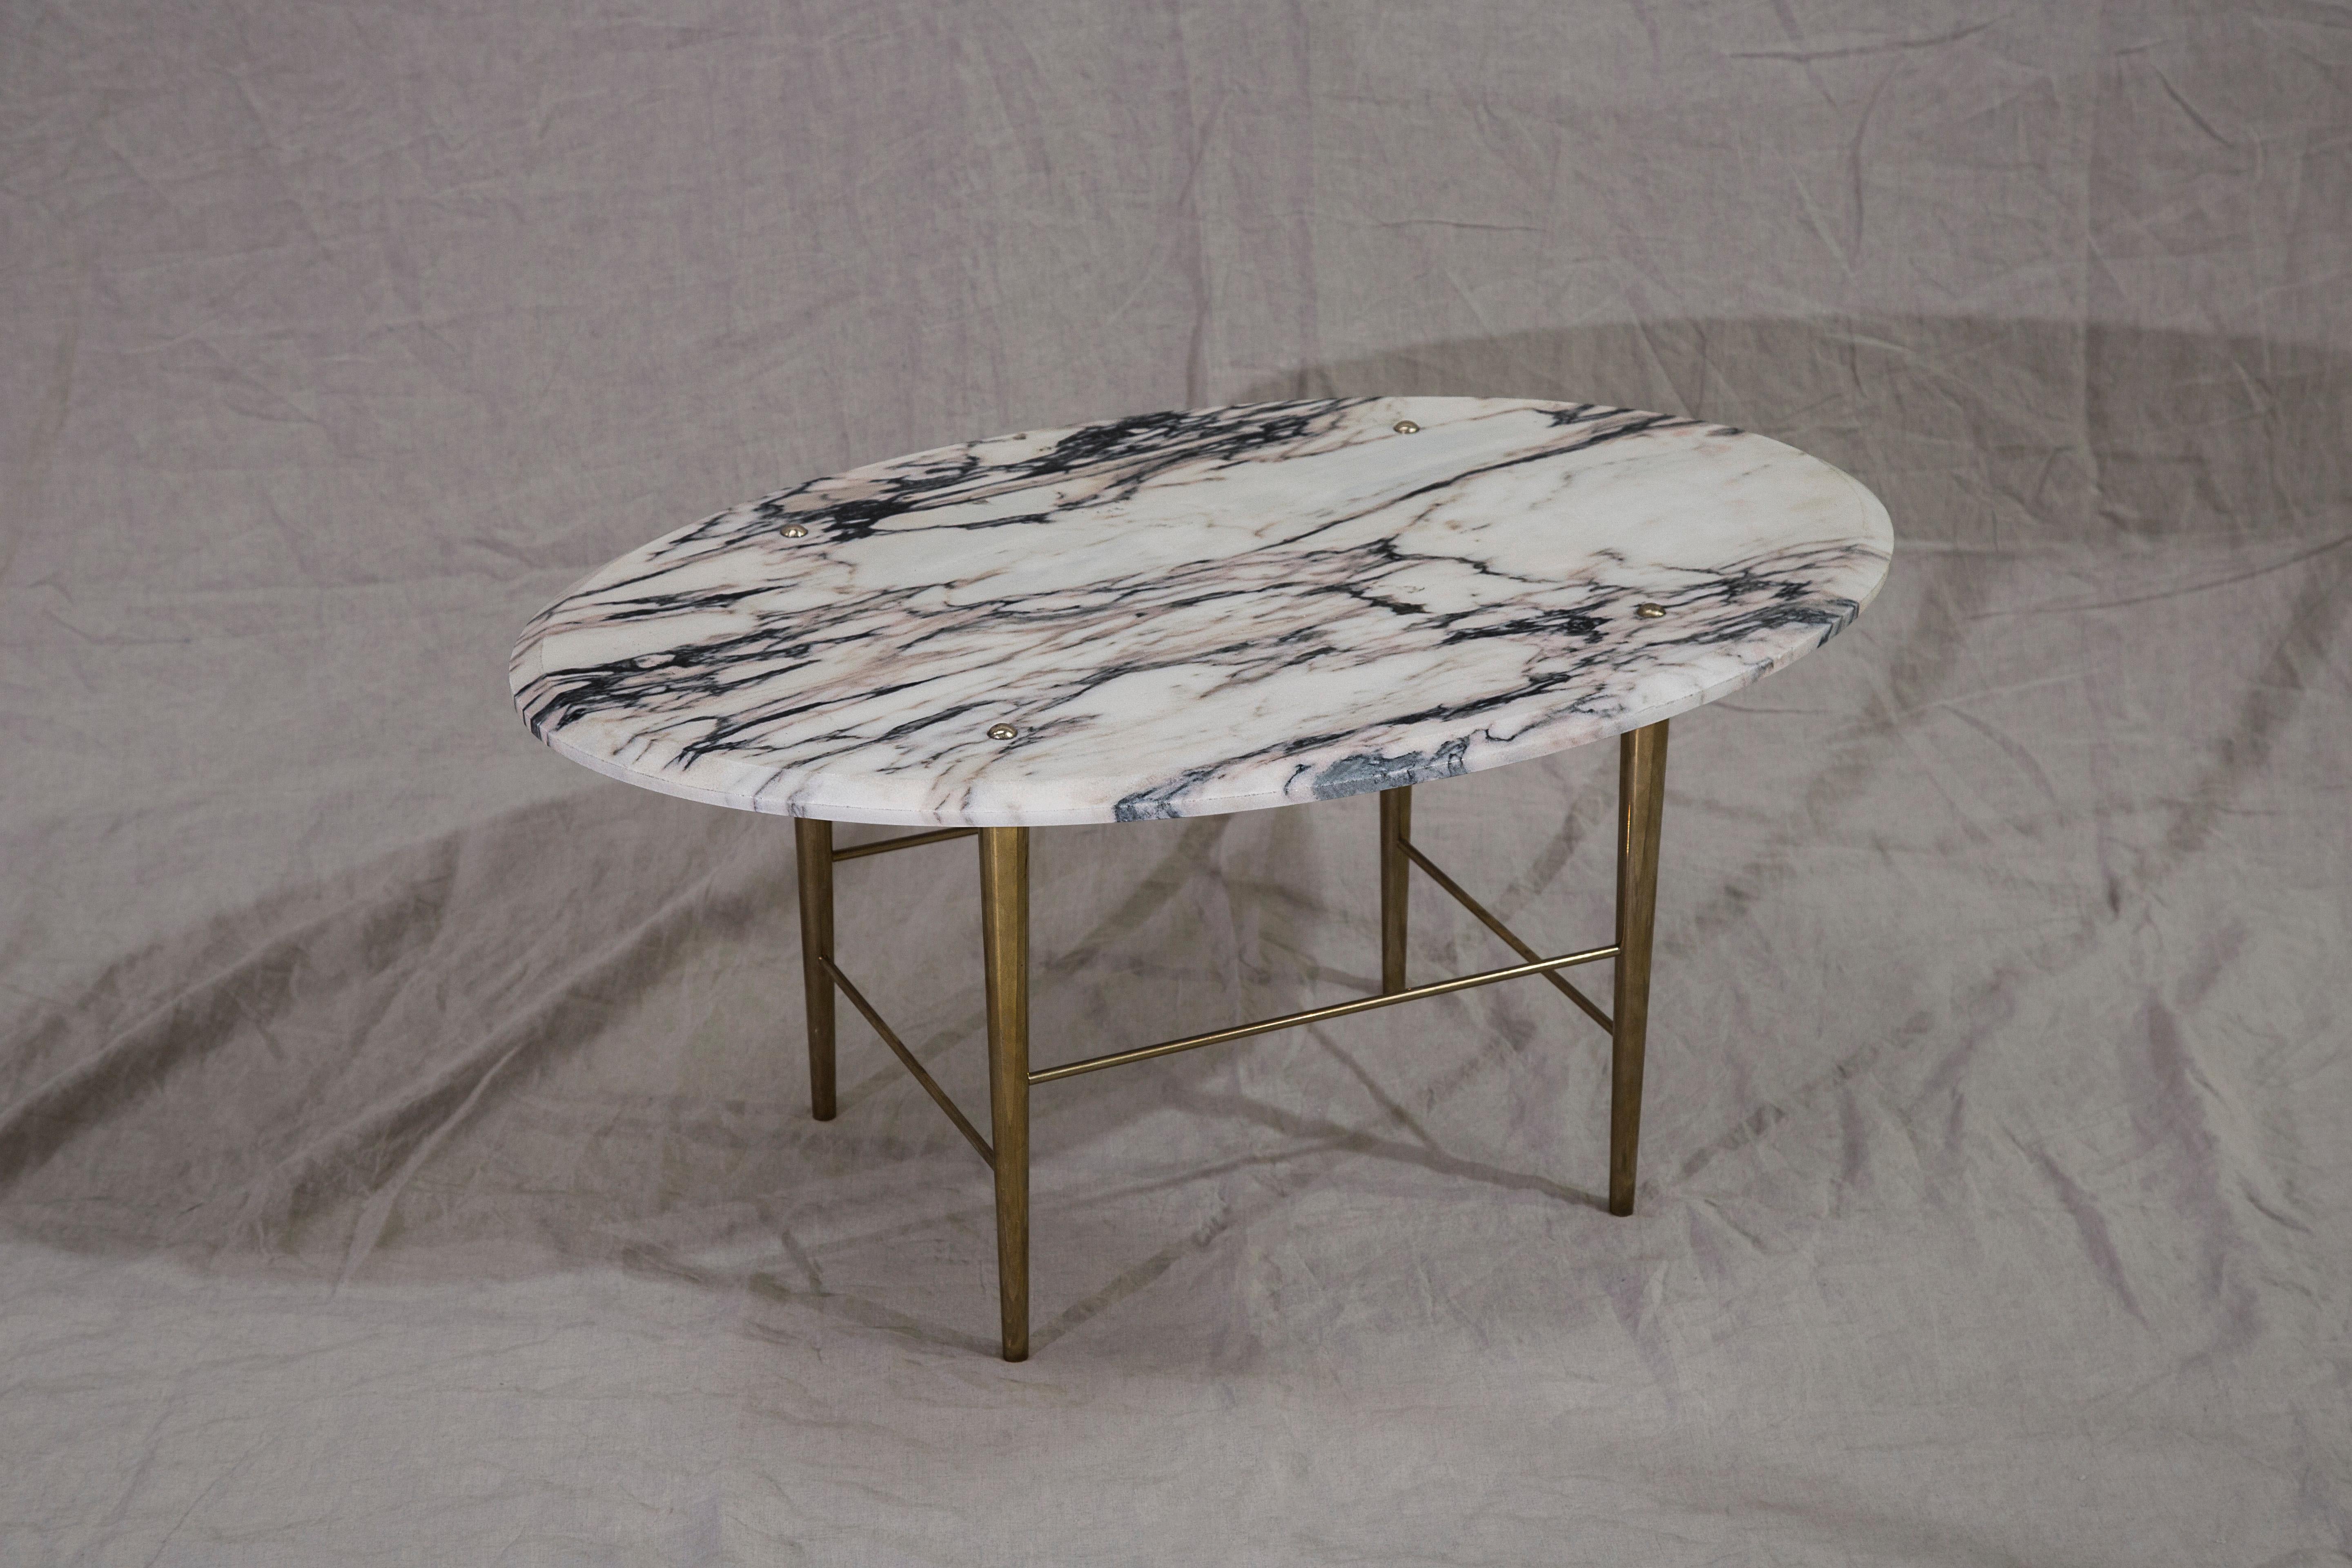 Table basse en marbre portugais et laiton poli, fabriquée à la main dans le nord de l'Angleterre.

Dimensions : 1200 mm (L) x 760 mm (L) x 400 mm (H)

Dimensions et finitions sur mesure disponibles.